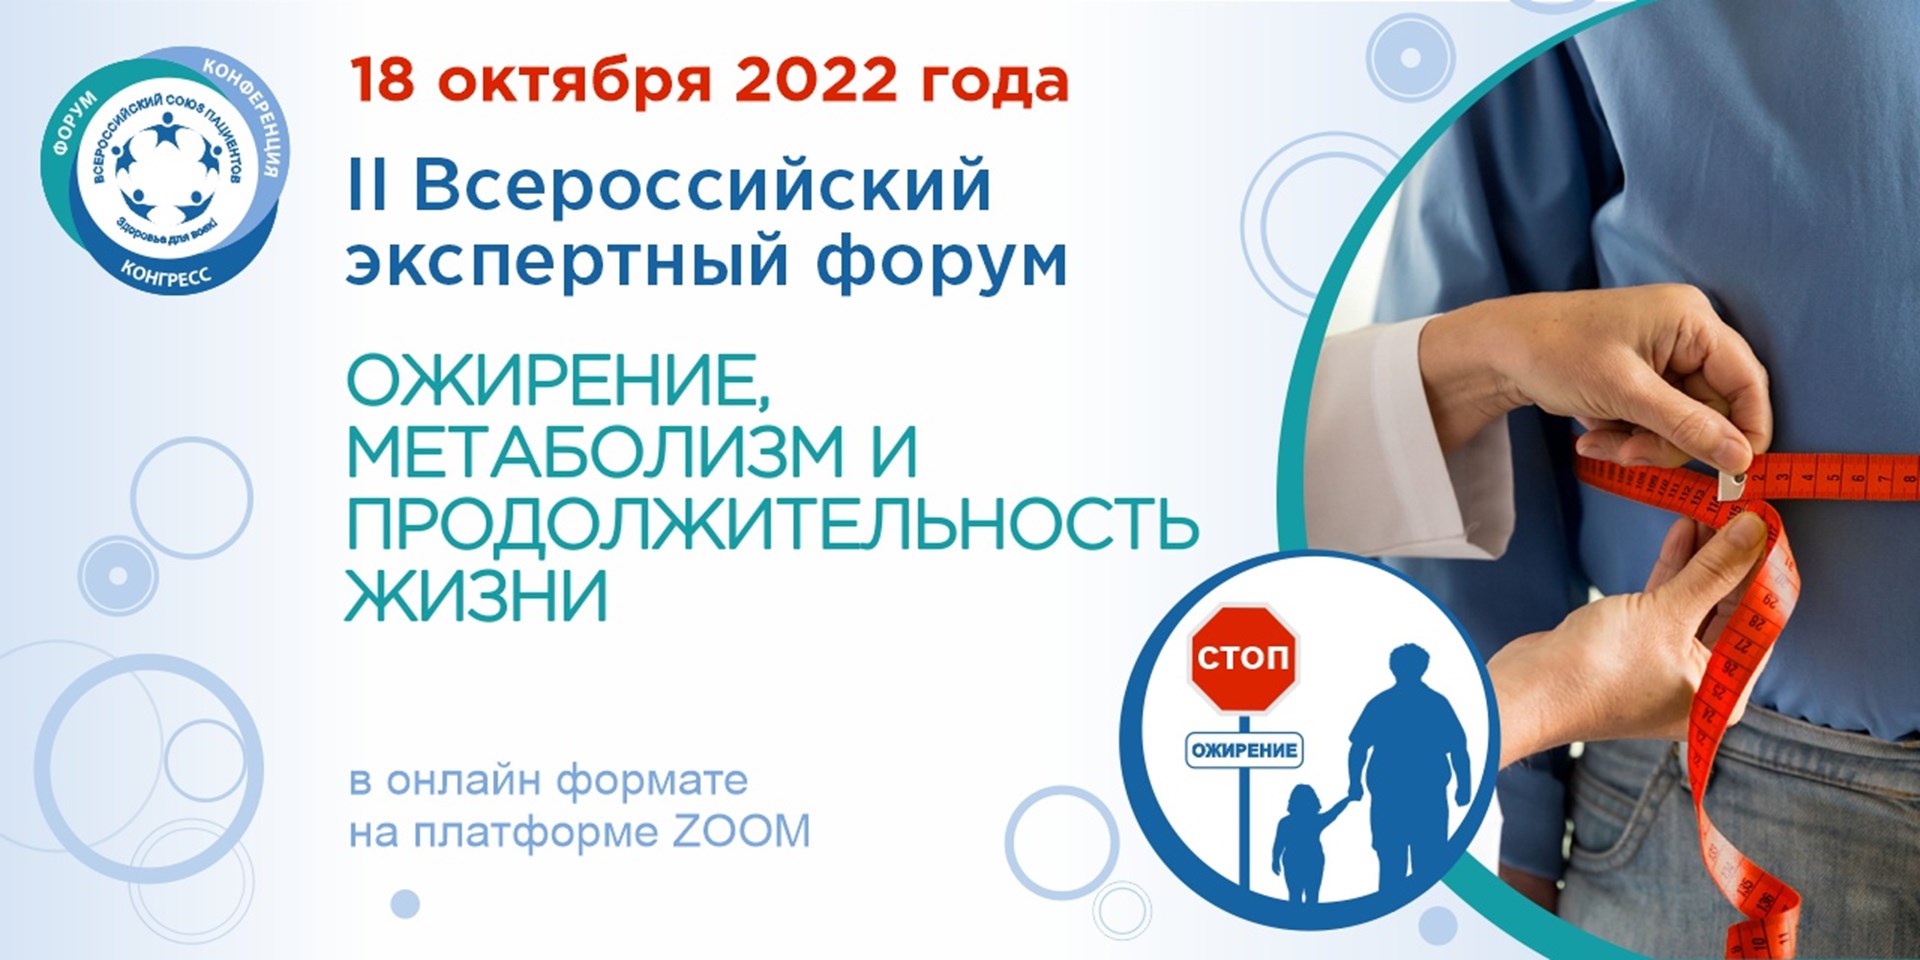 17.10.2022 Завтра состоится II Всероссийский экспертный форум «Ожирение, метаболизм и продолжительность жизни»